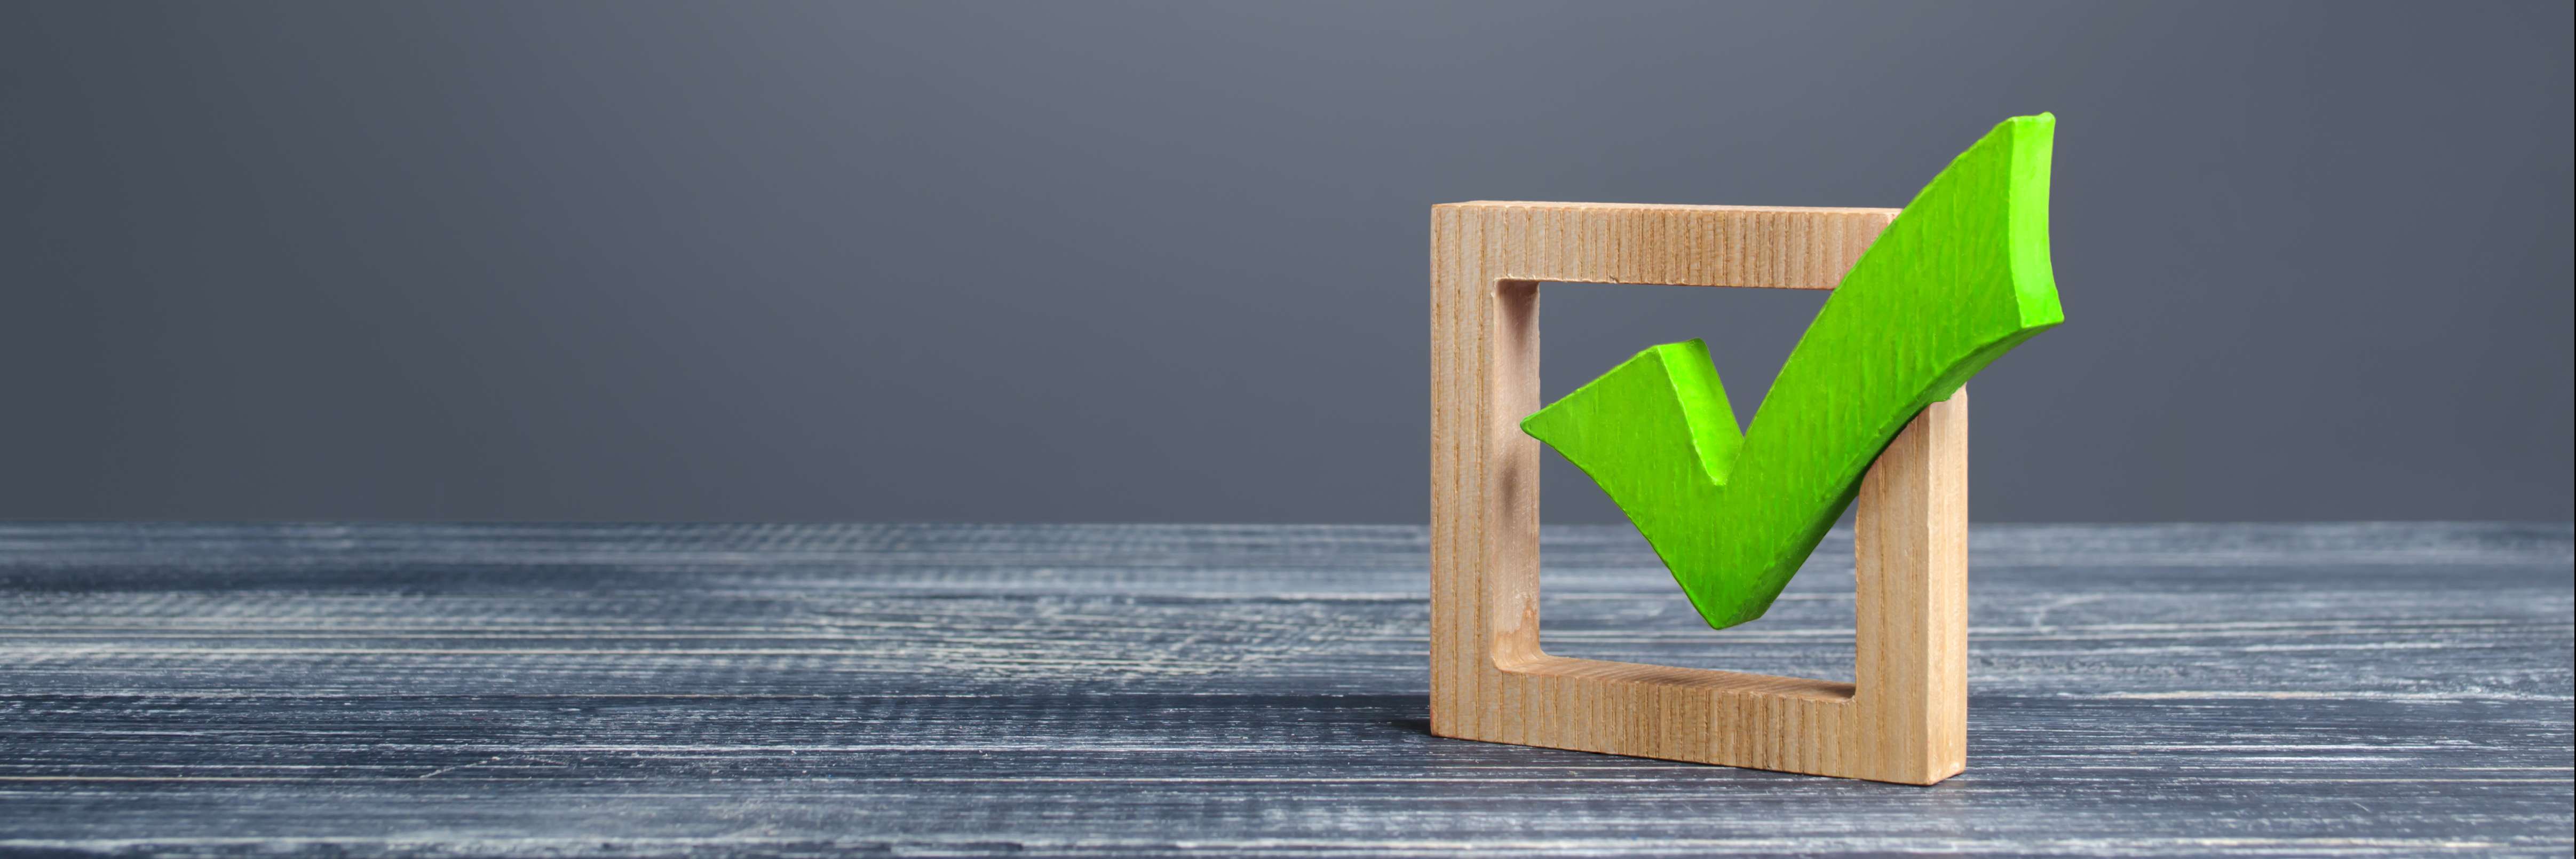 Quadrado de madeira, como se fosse uma caixa de seleção, e um "check" em verde dentro do quadrado, ambos apoiados em uma superfície. 